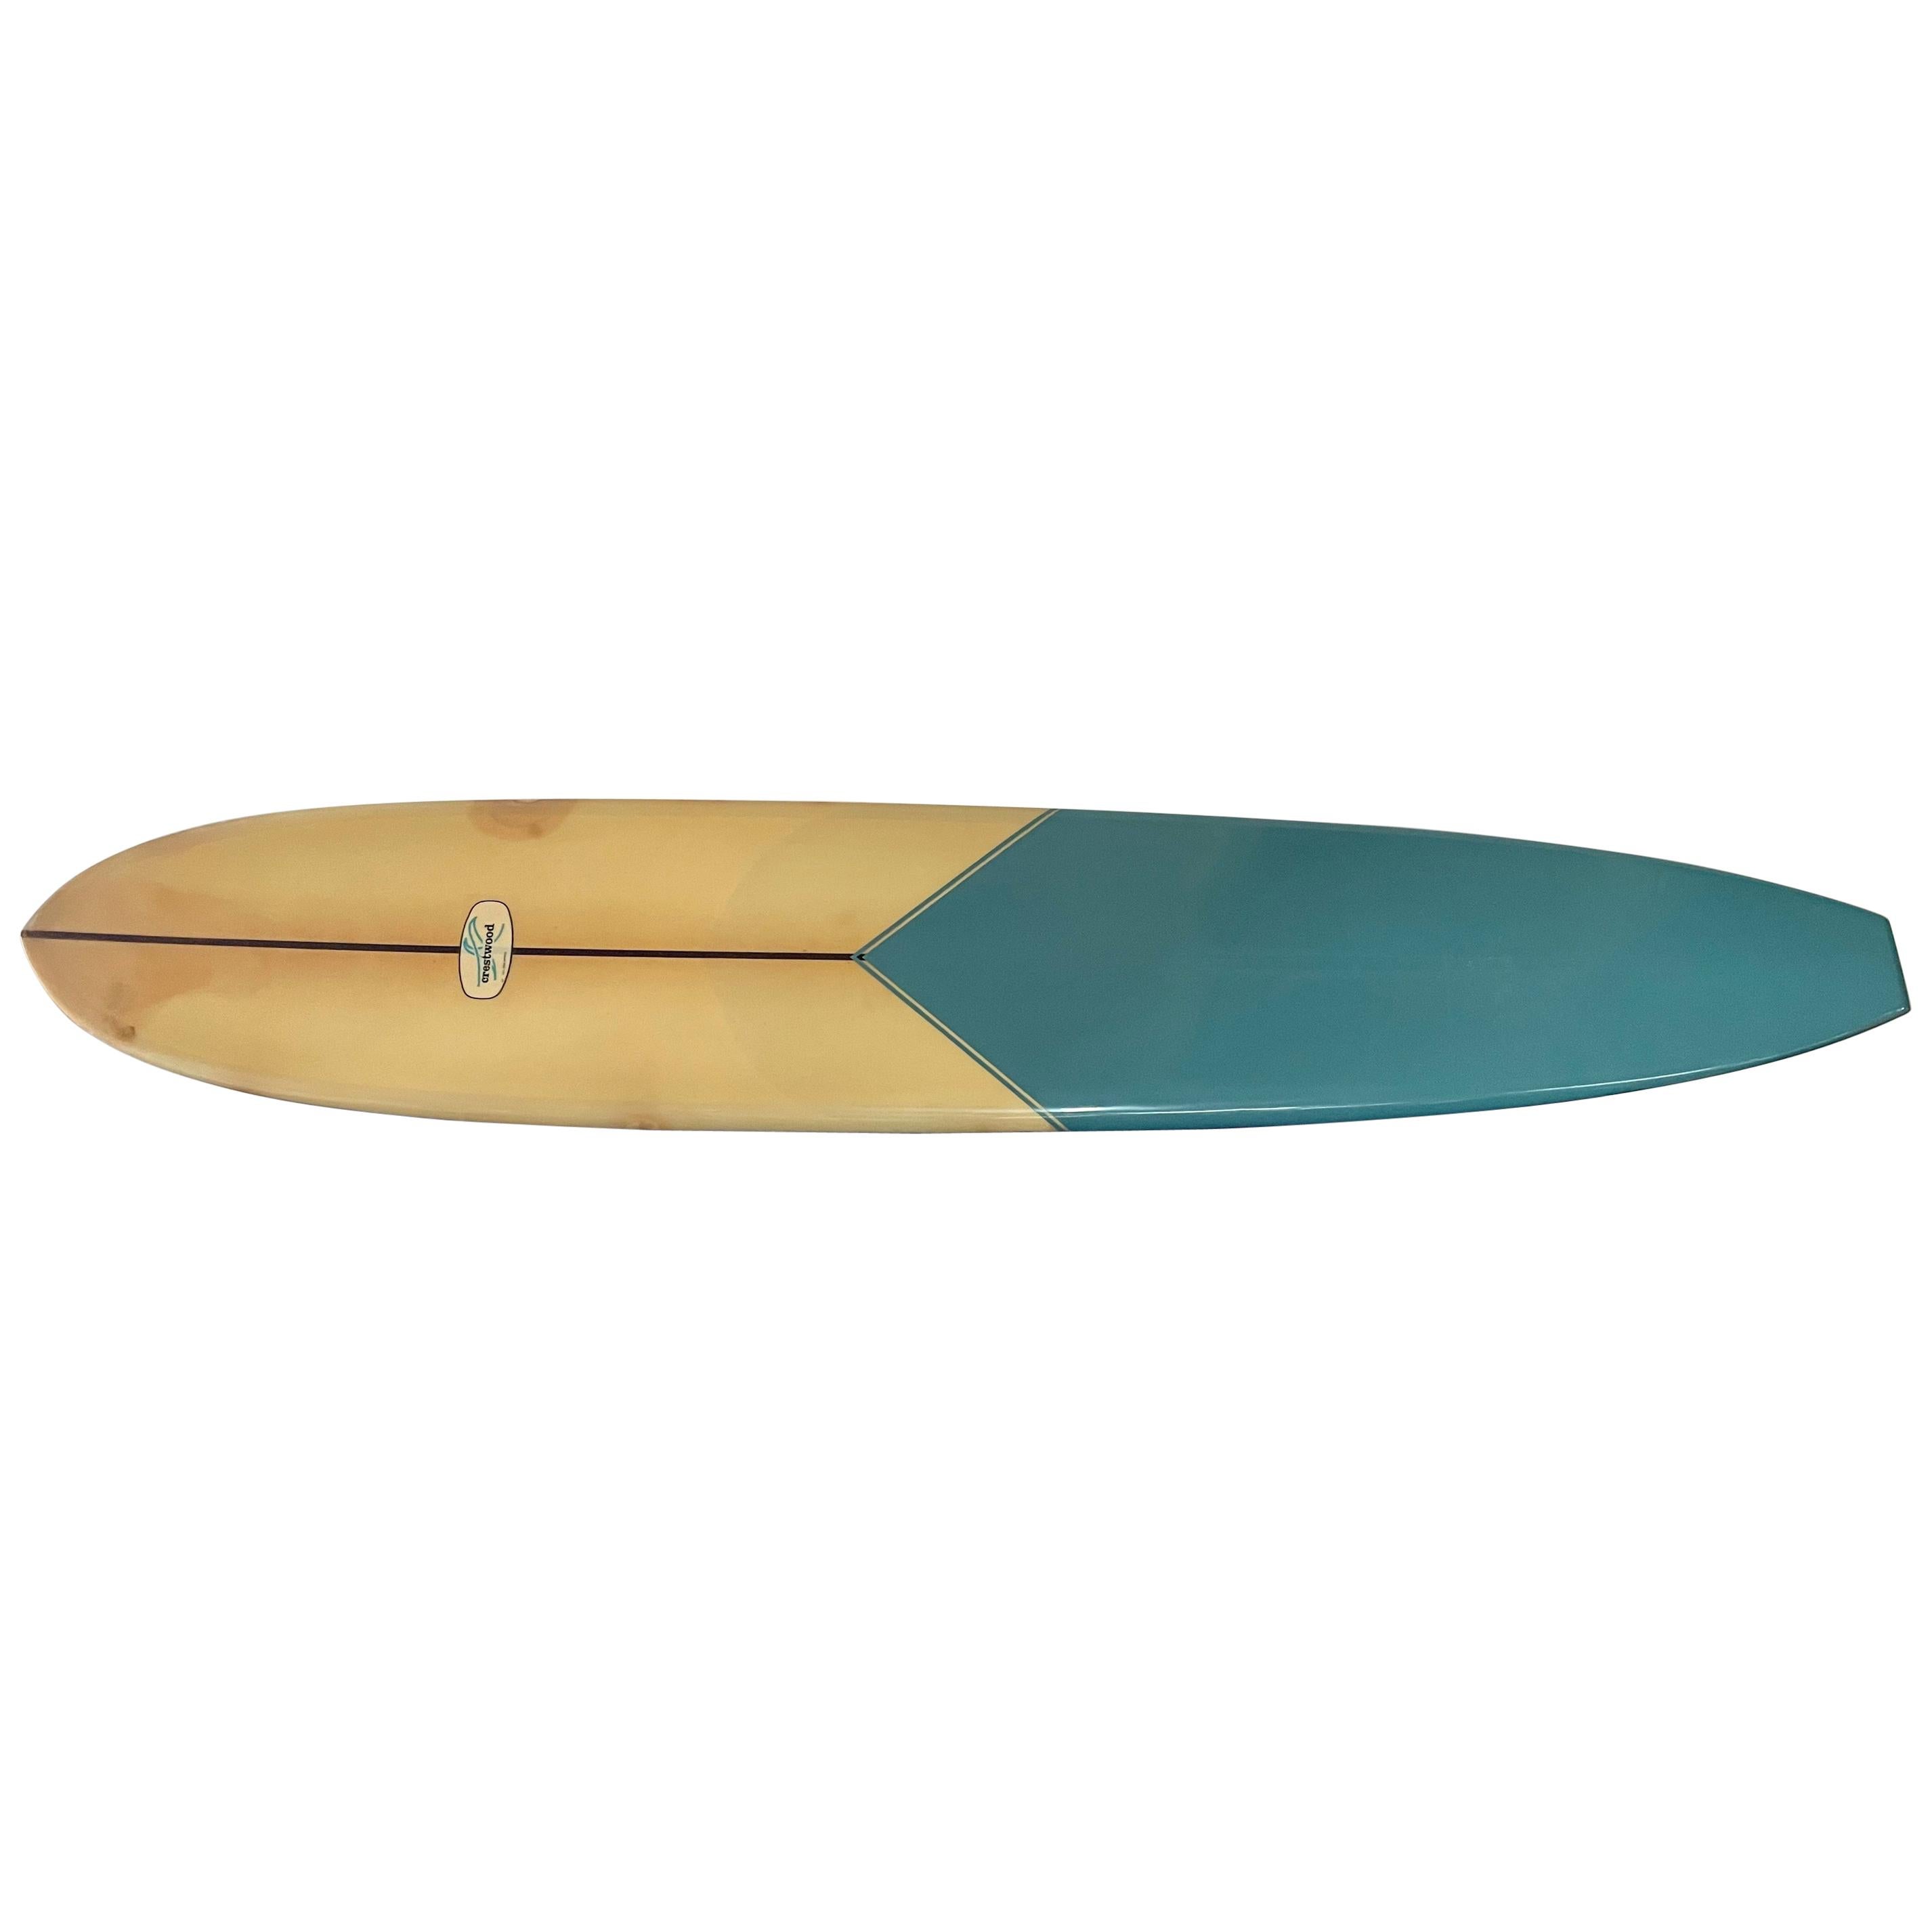 1966 Vintage Crestwood Longboard / Surfboard by Billy Sautner